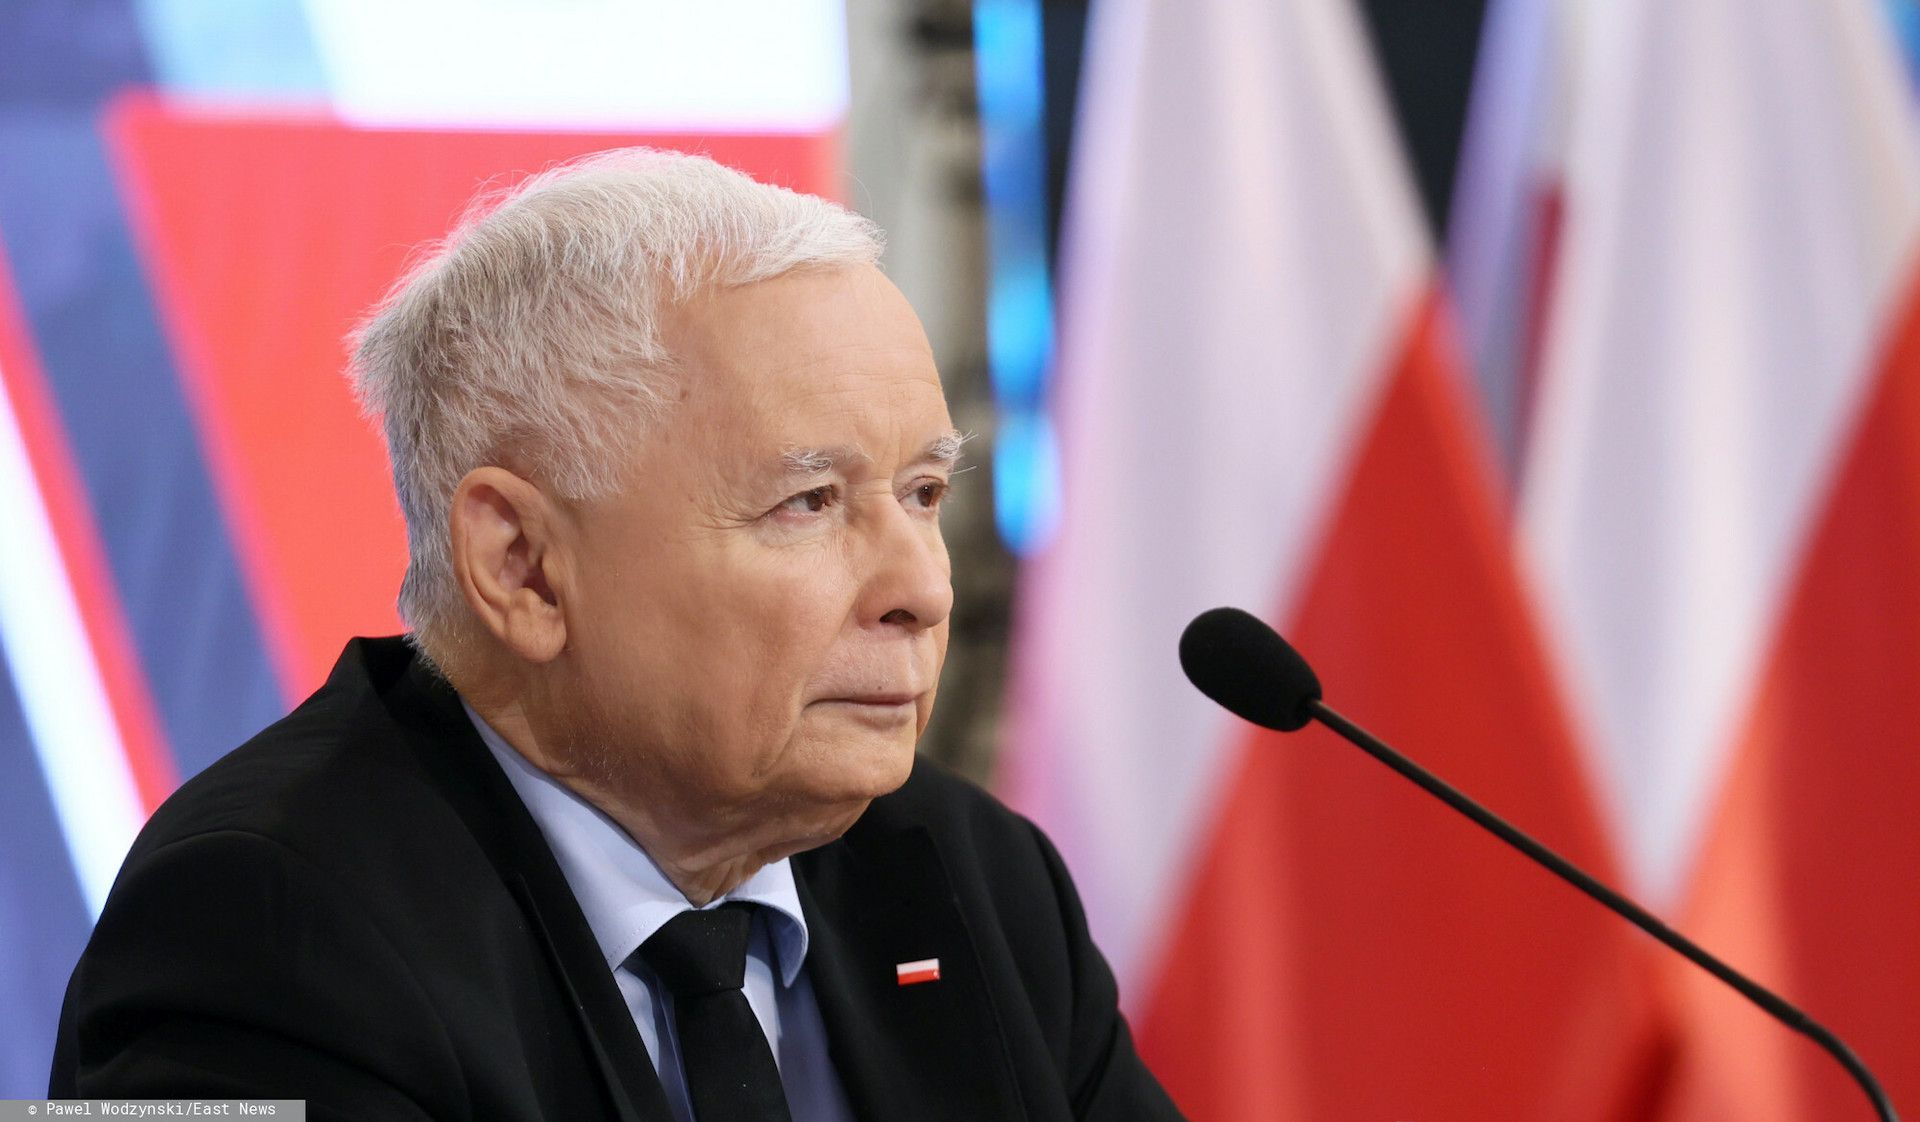 Roman Giertych krytykuje Jarosława Kaczyńskiego po szczycie Warsaw Summit